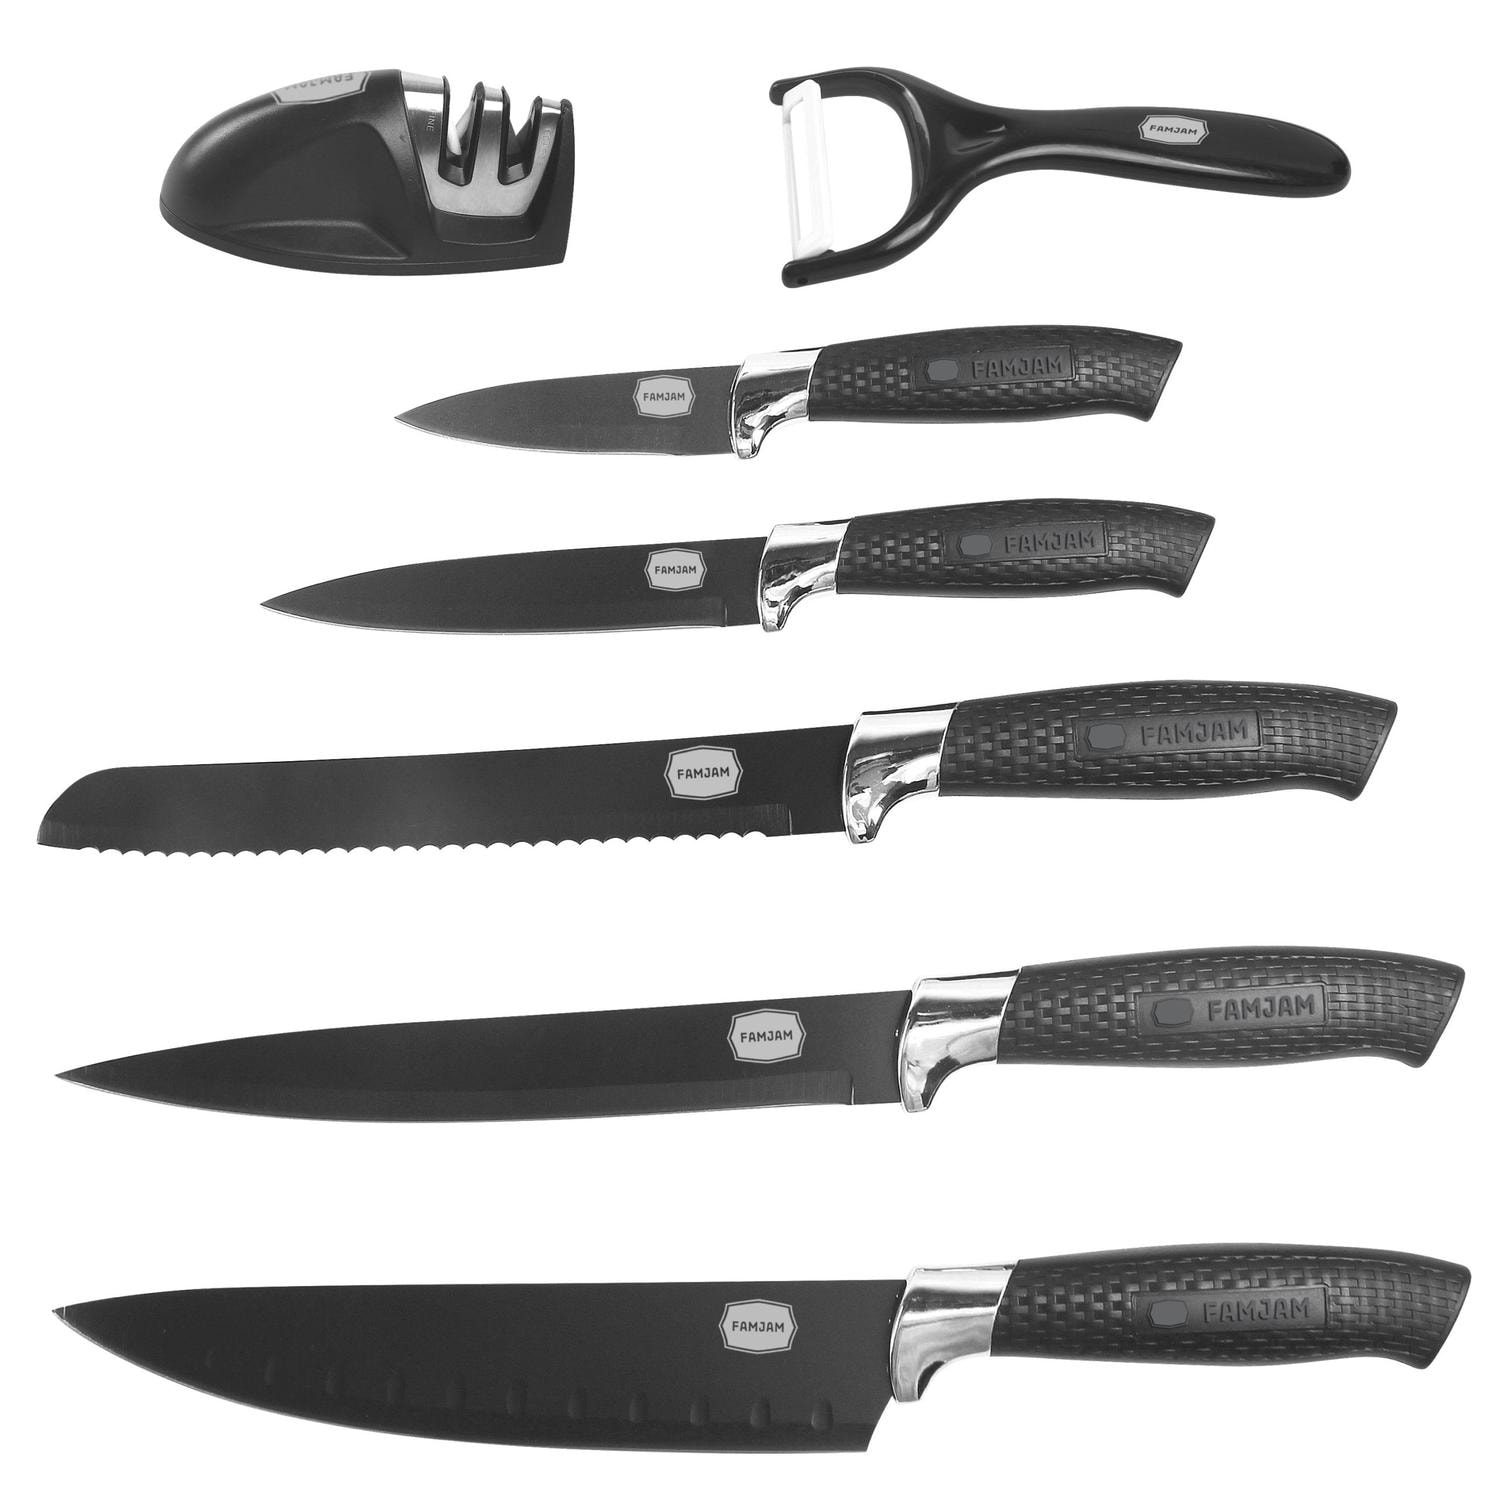 8 Delar Knivset med Ställ för Köket - Köksknivar Skalare och Knivslip Set (1 av 43) (2 av 43)